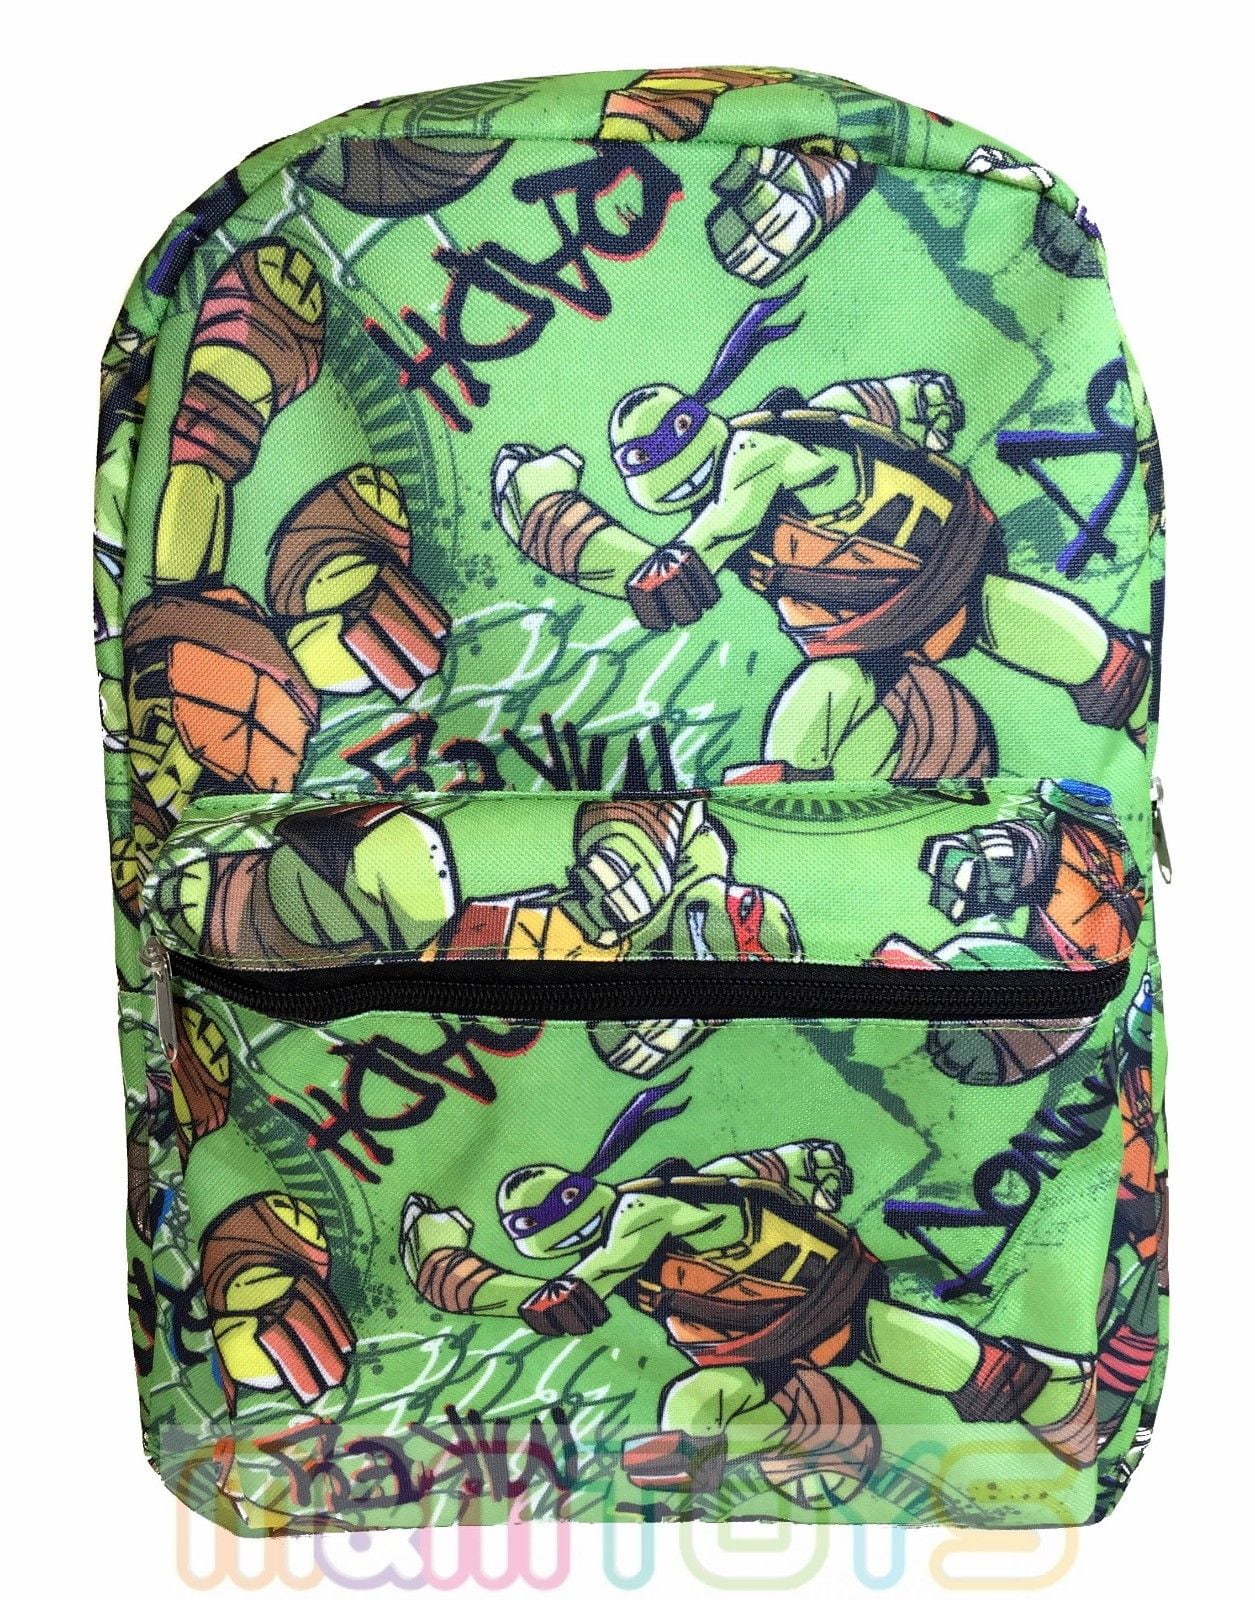 Ninja Turtles 16" All Printed Over School Backpack